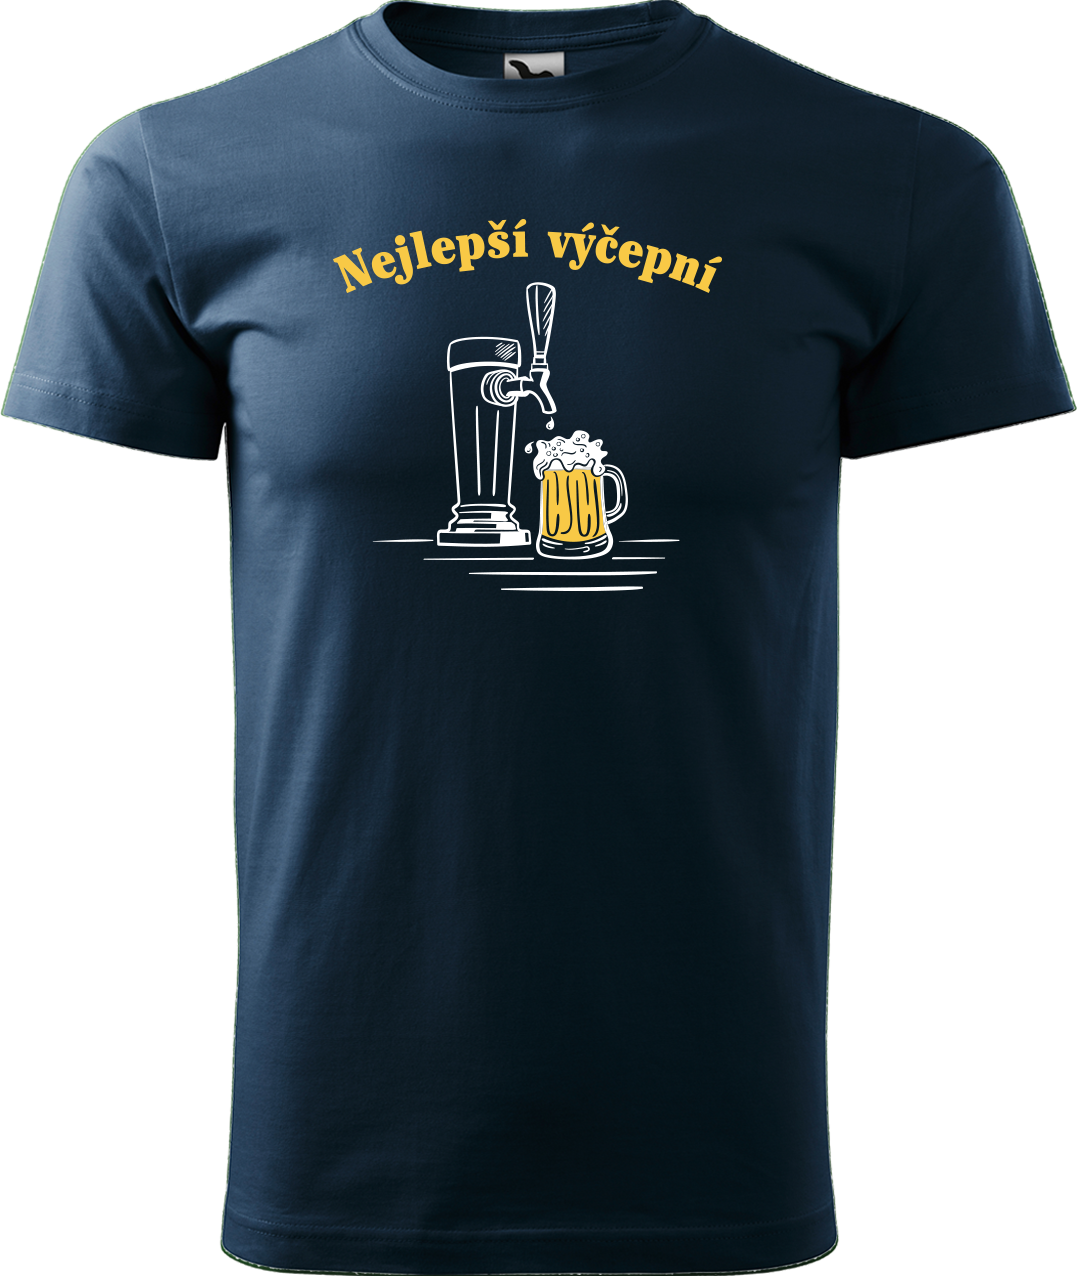 Pivní tričko - Nejlepší hospodskej Velikost: M, Barva: Námořní modrá (02)